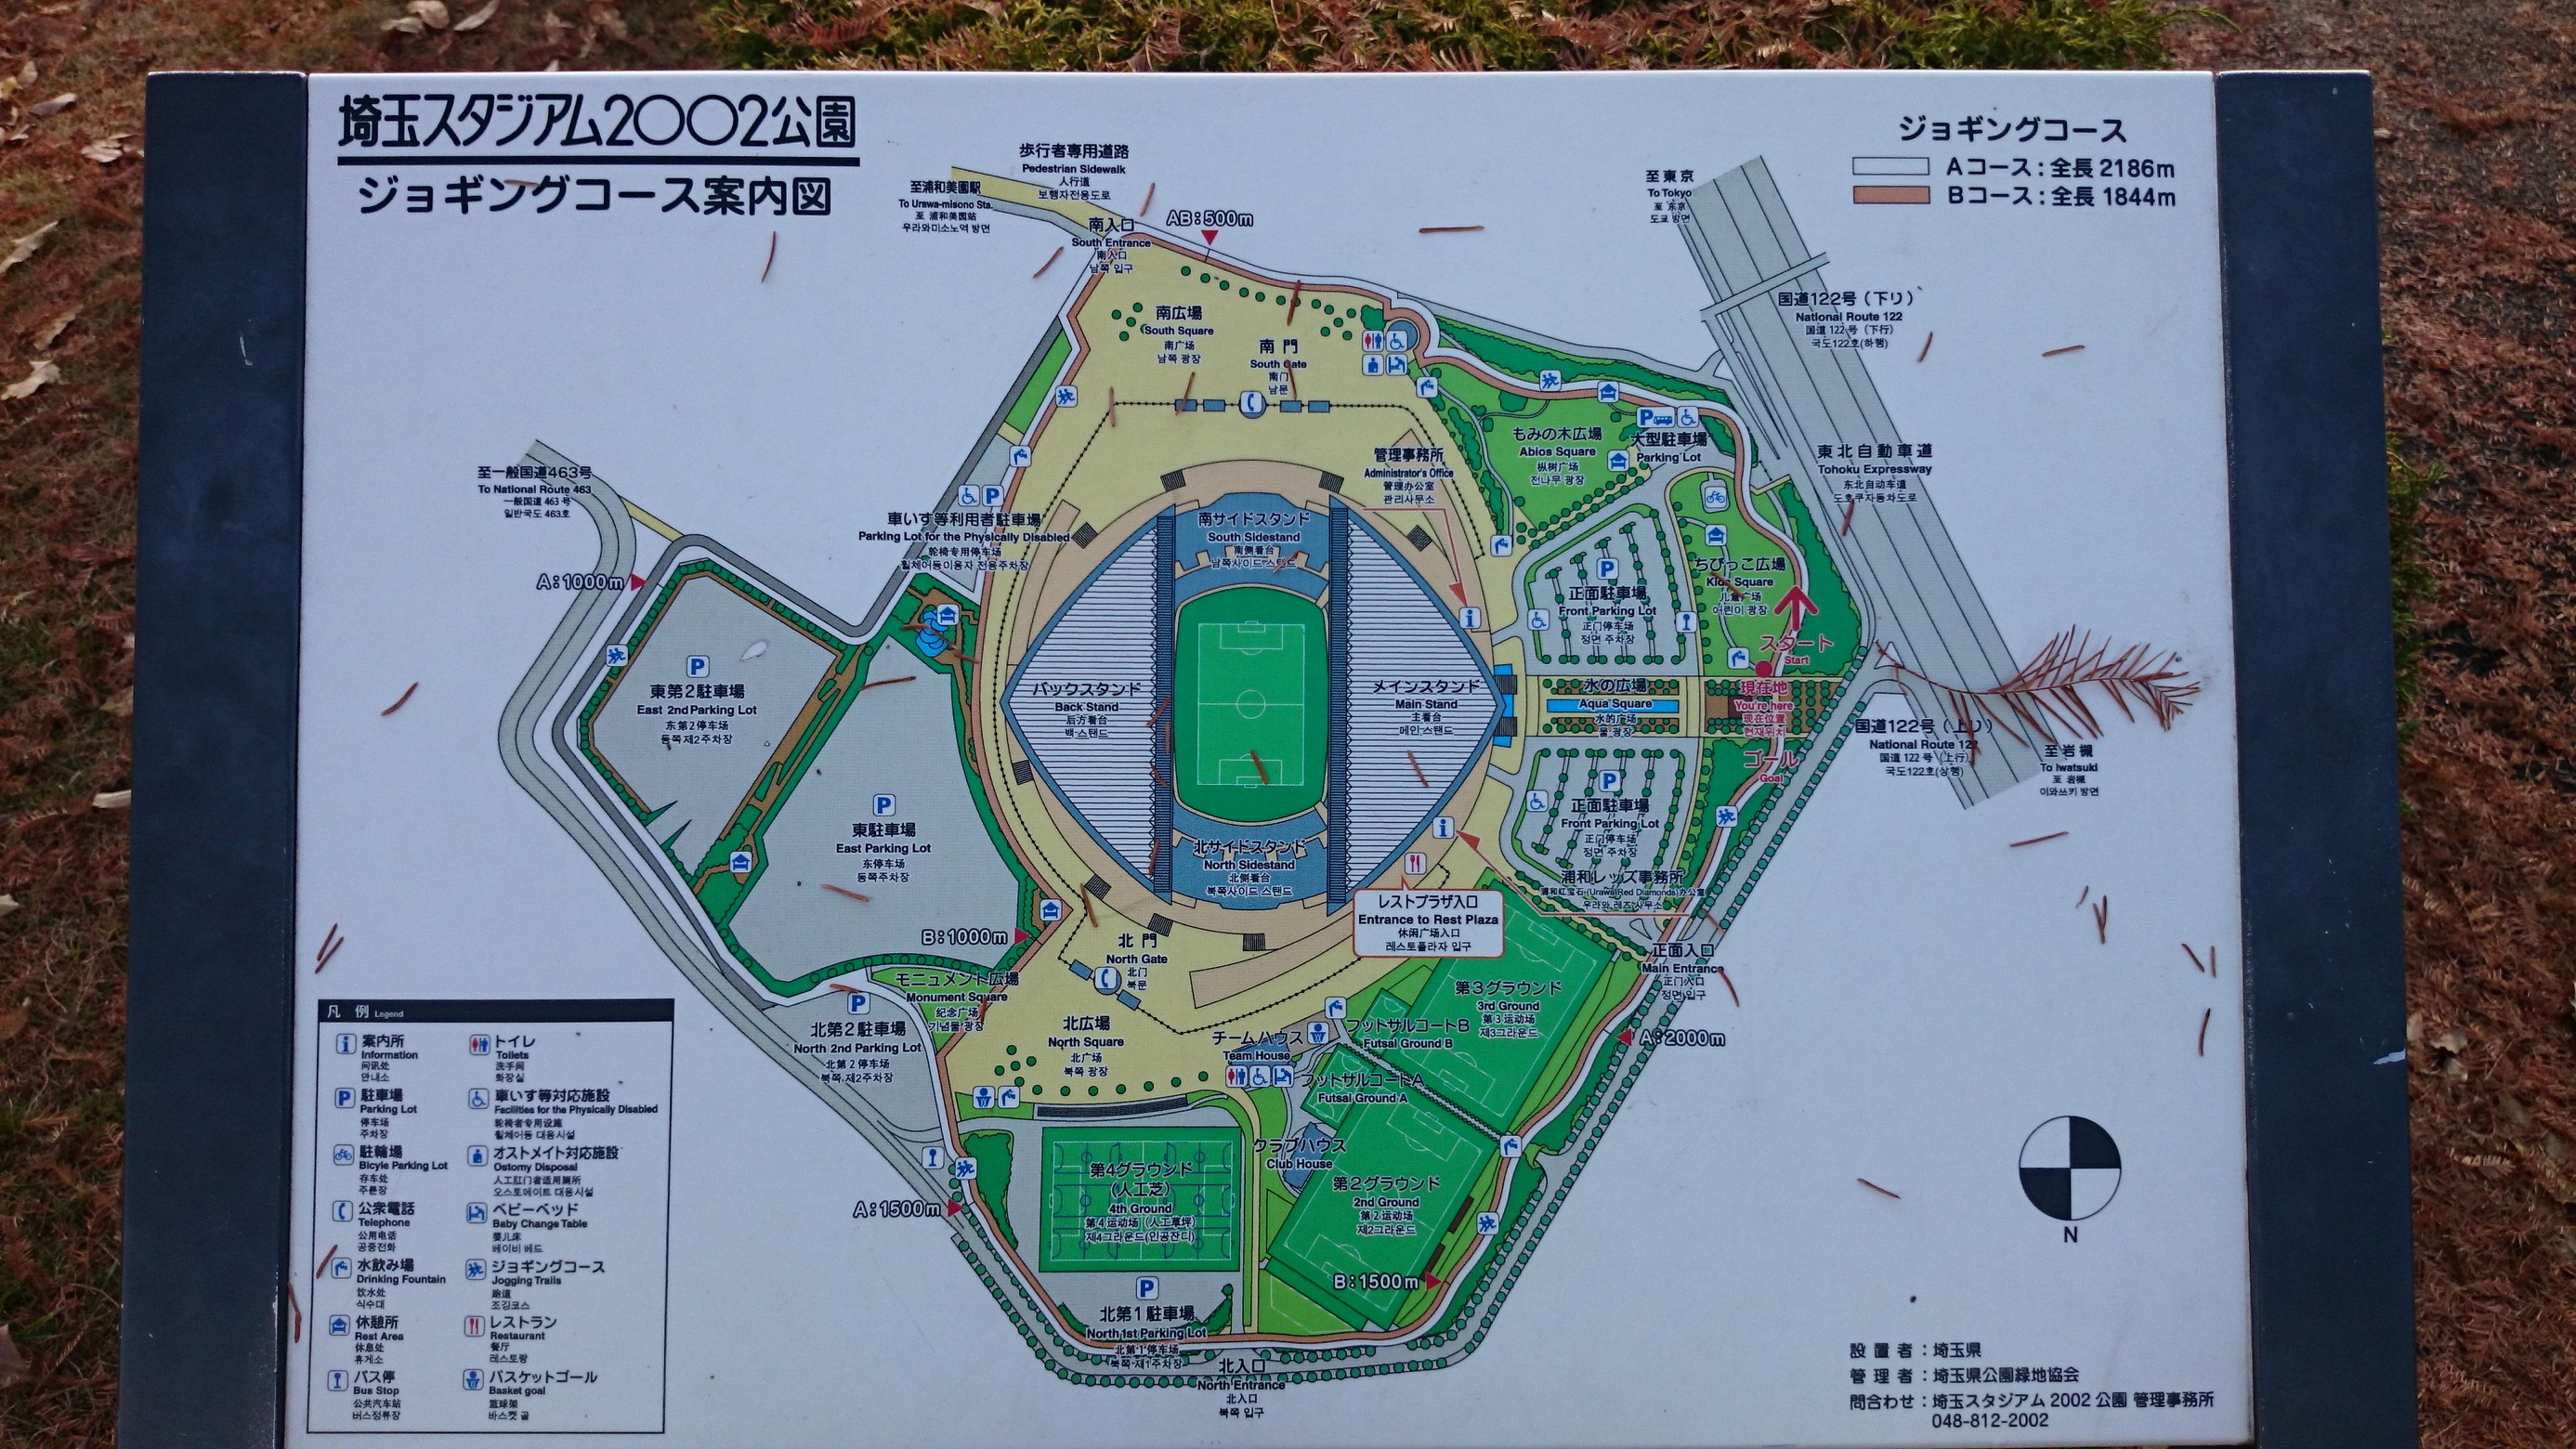 埼玉スタジアム2002公園 　ランニングコース